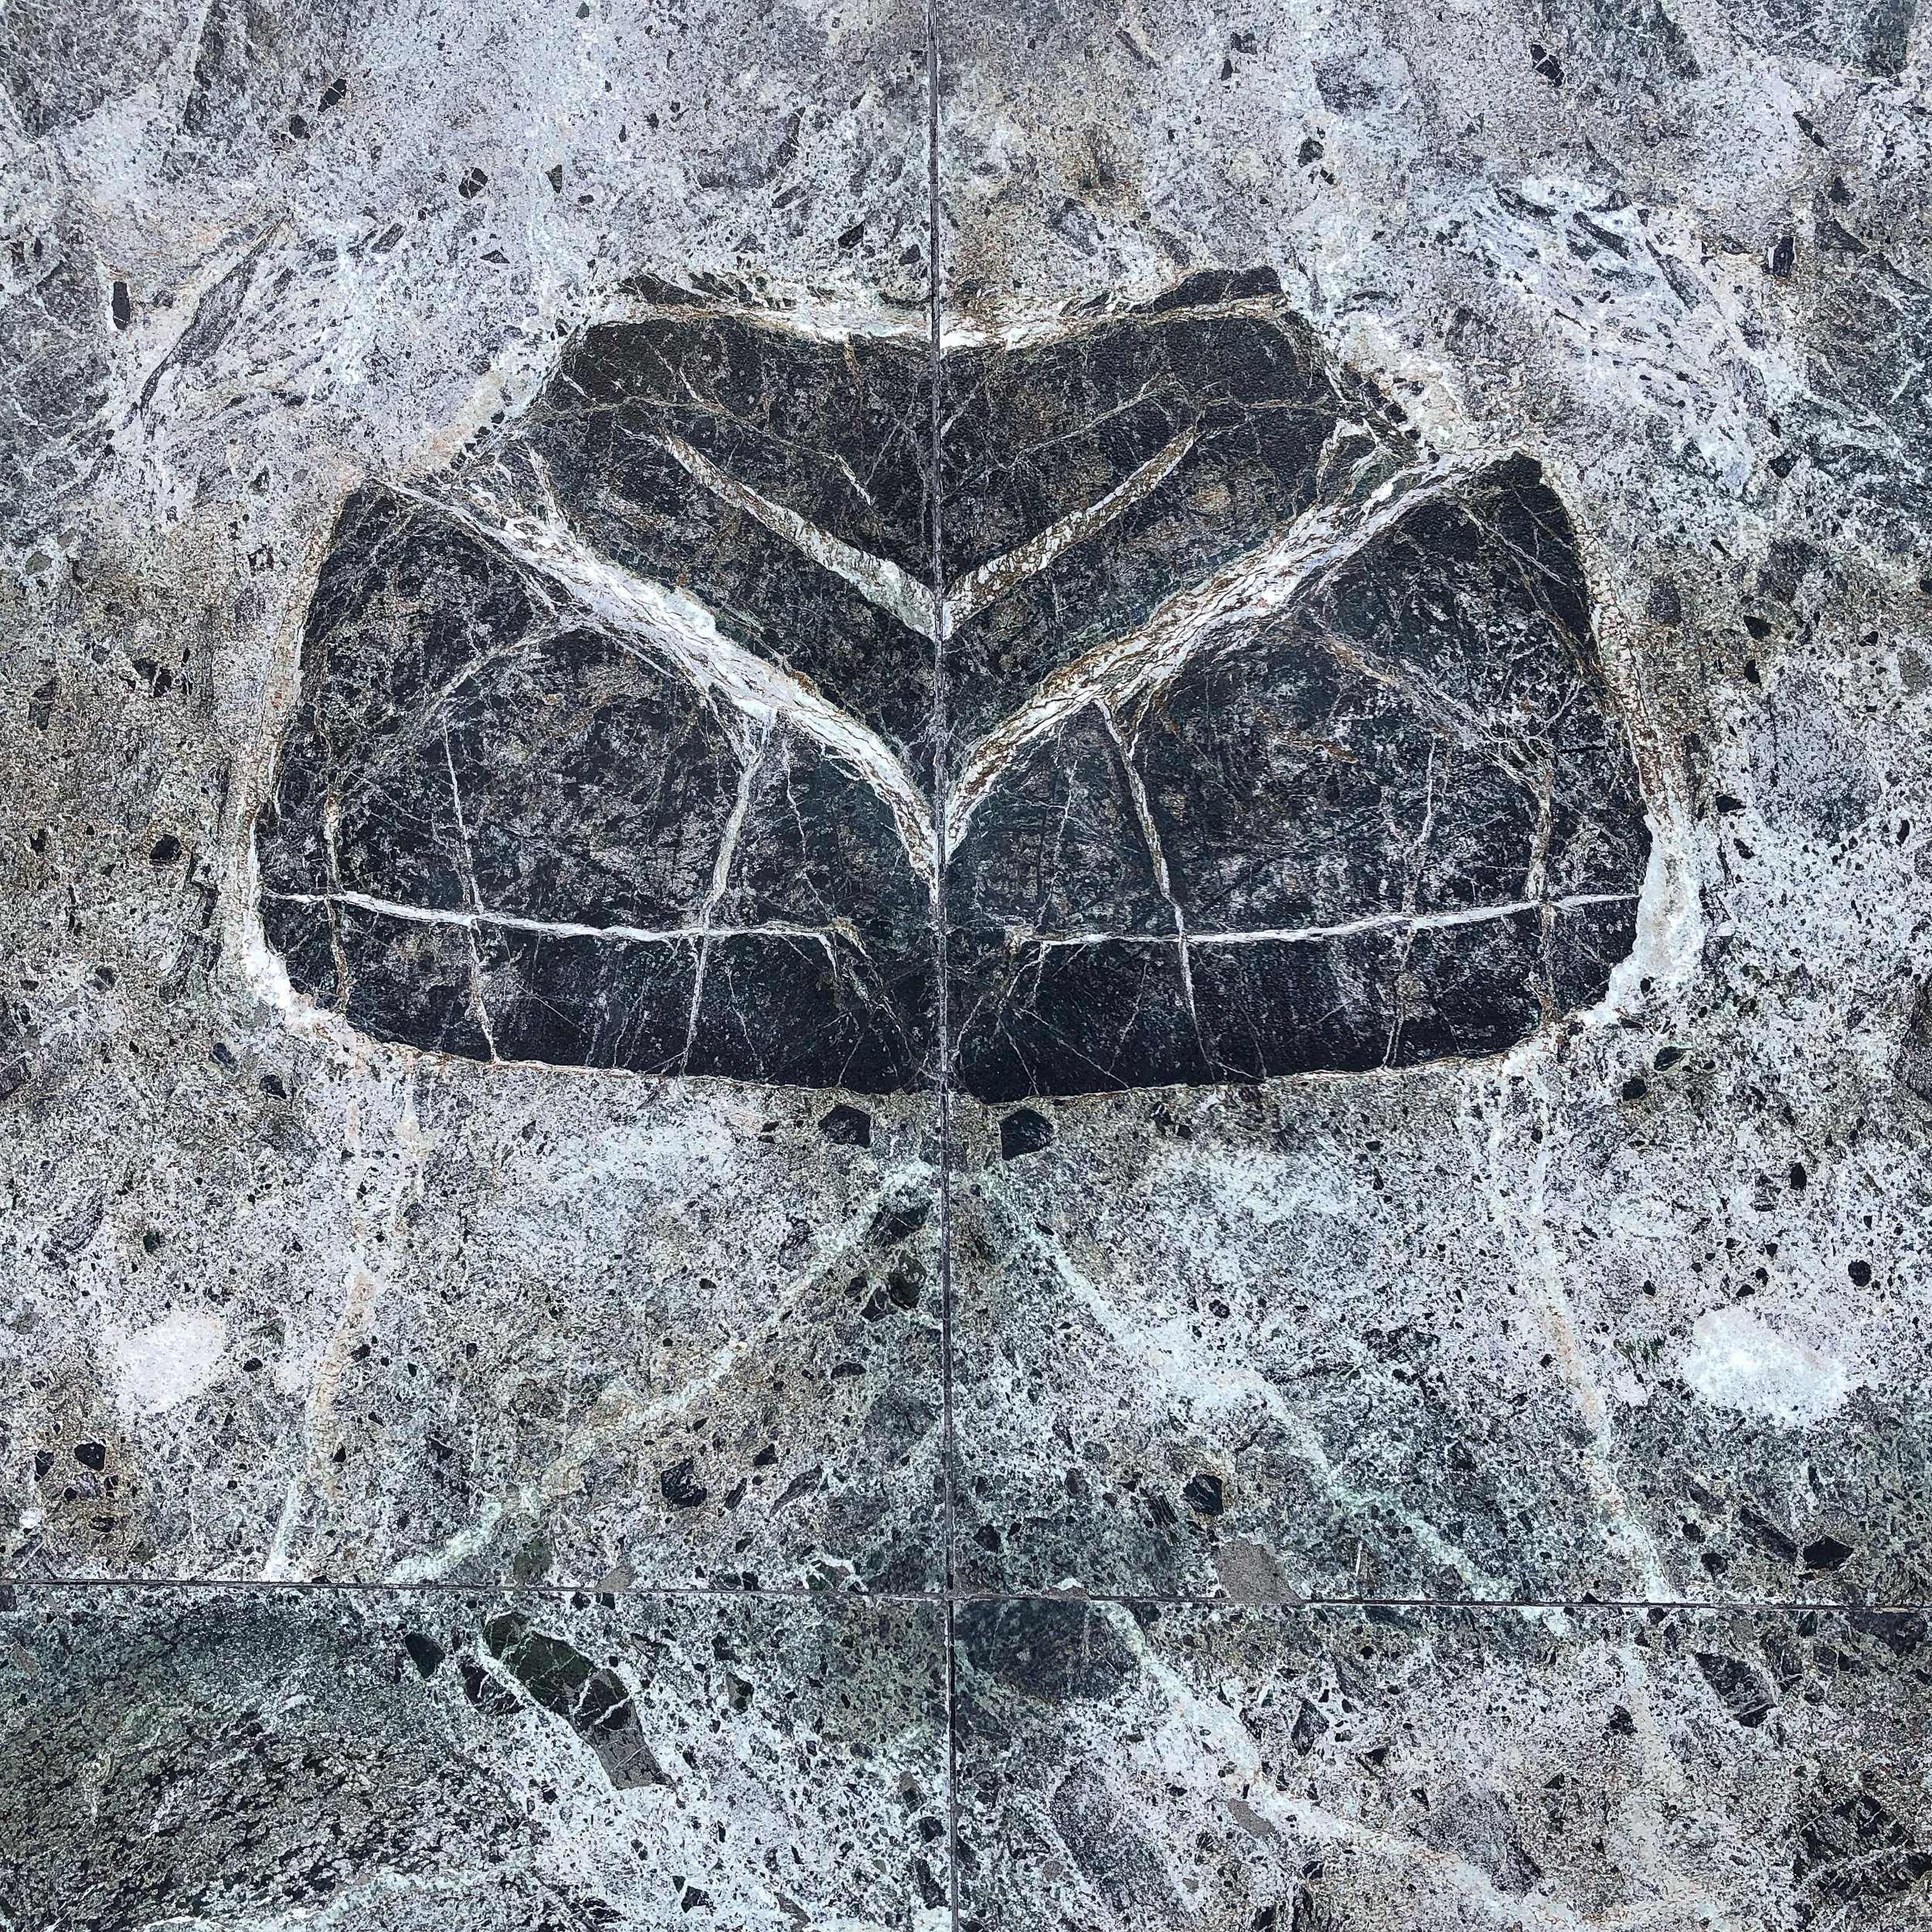 Symmetry in stone